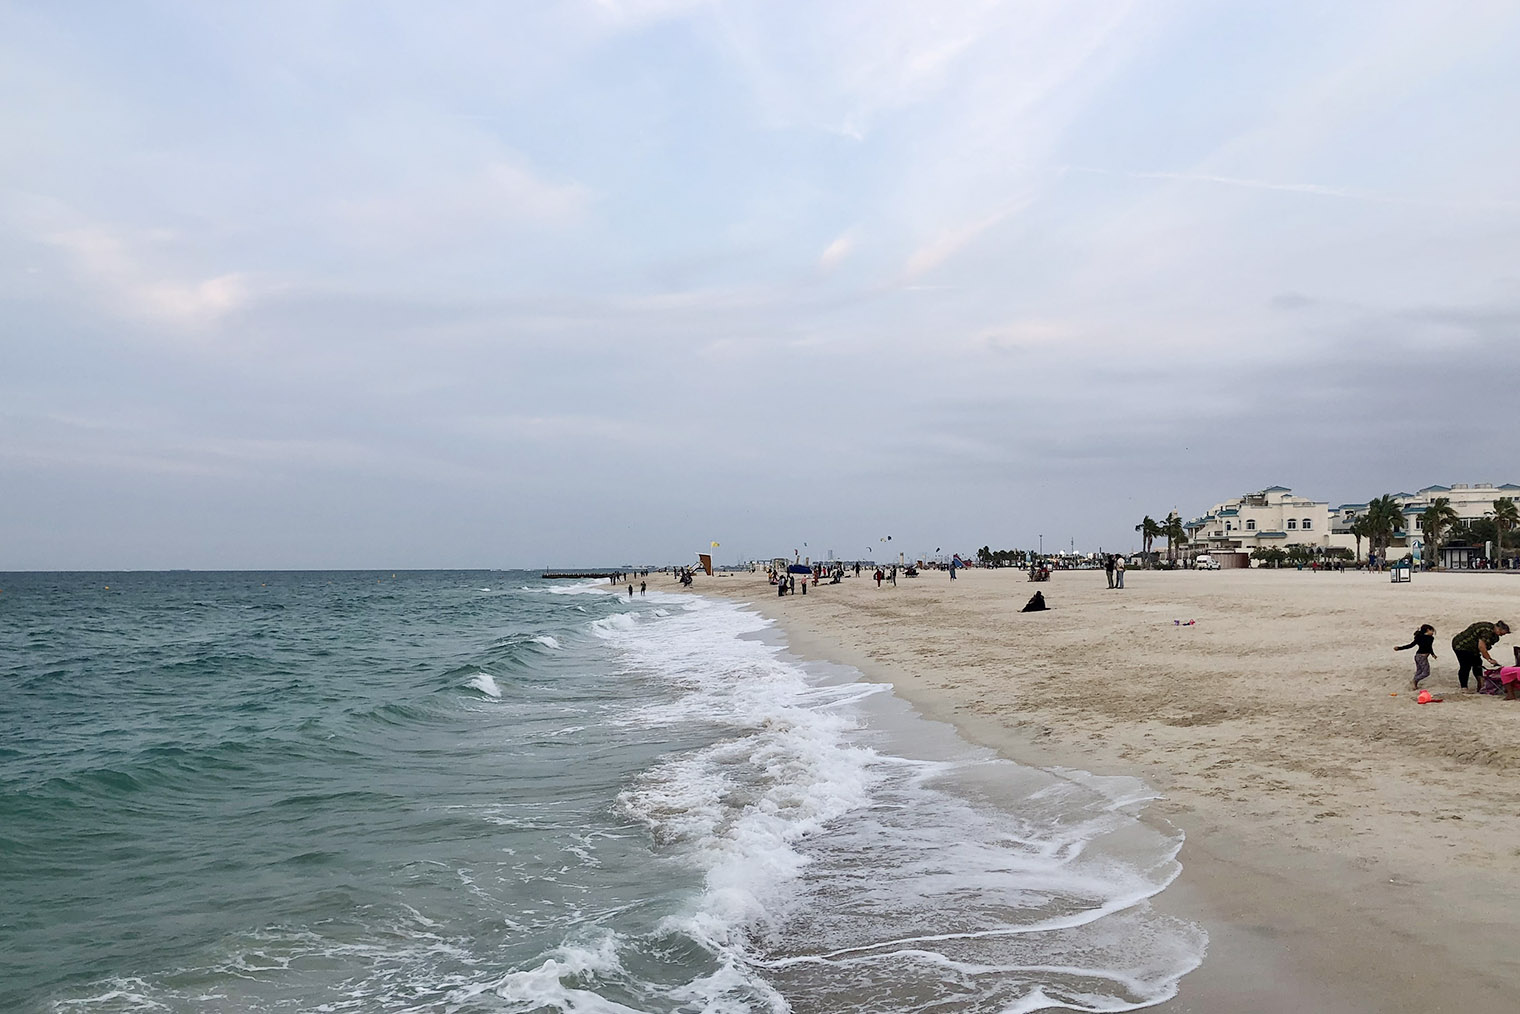 Часть пляжа, где нет серферов, подходит для купания, если не боитесь волн